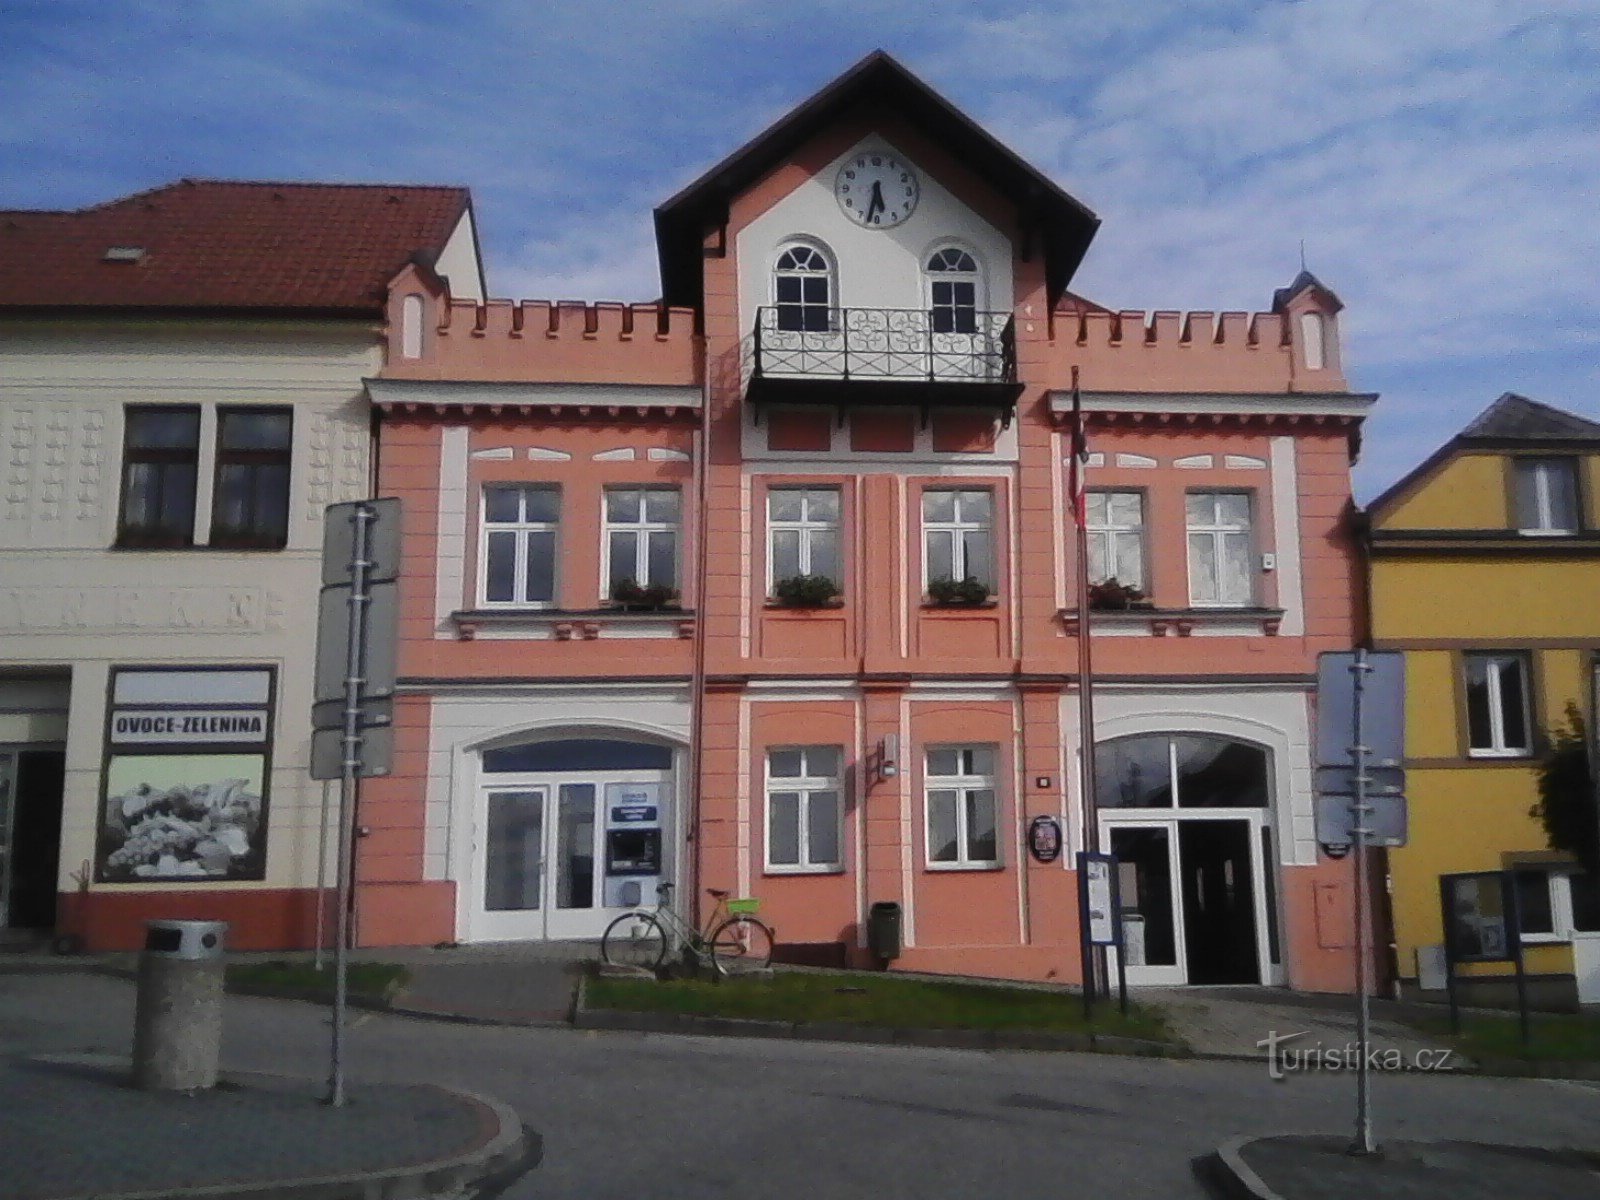 2. A prefeitura em Mladá Vožica usada desde 1872